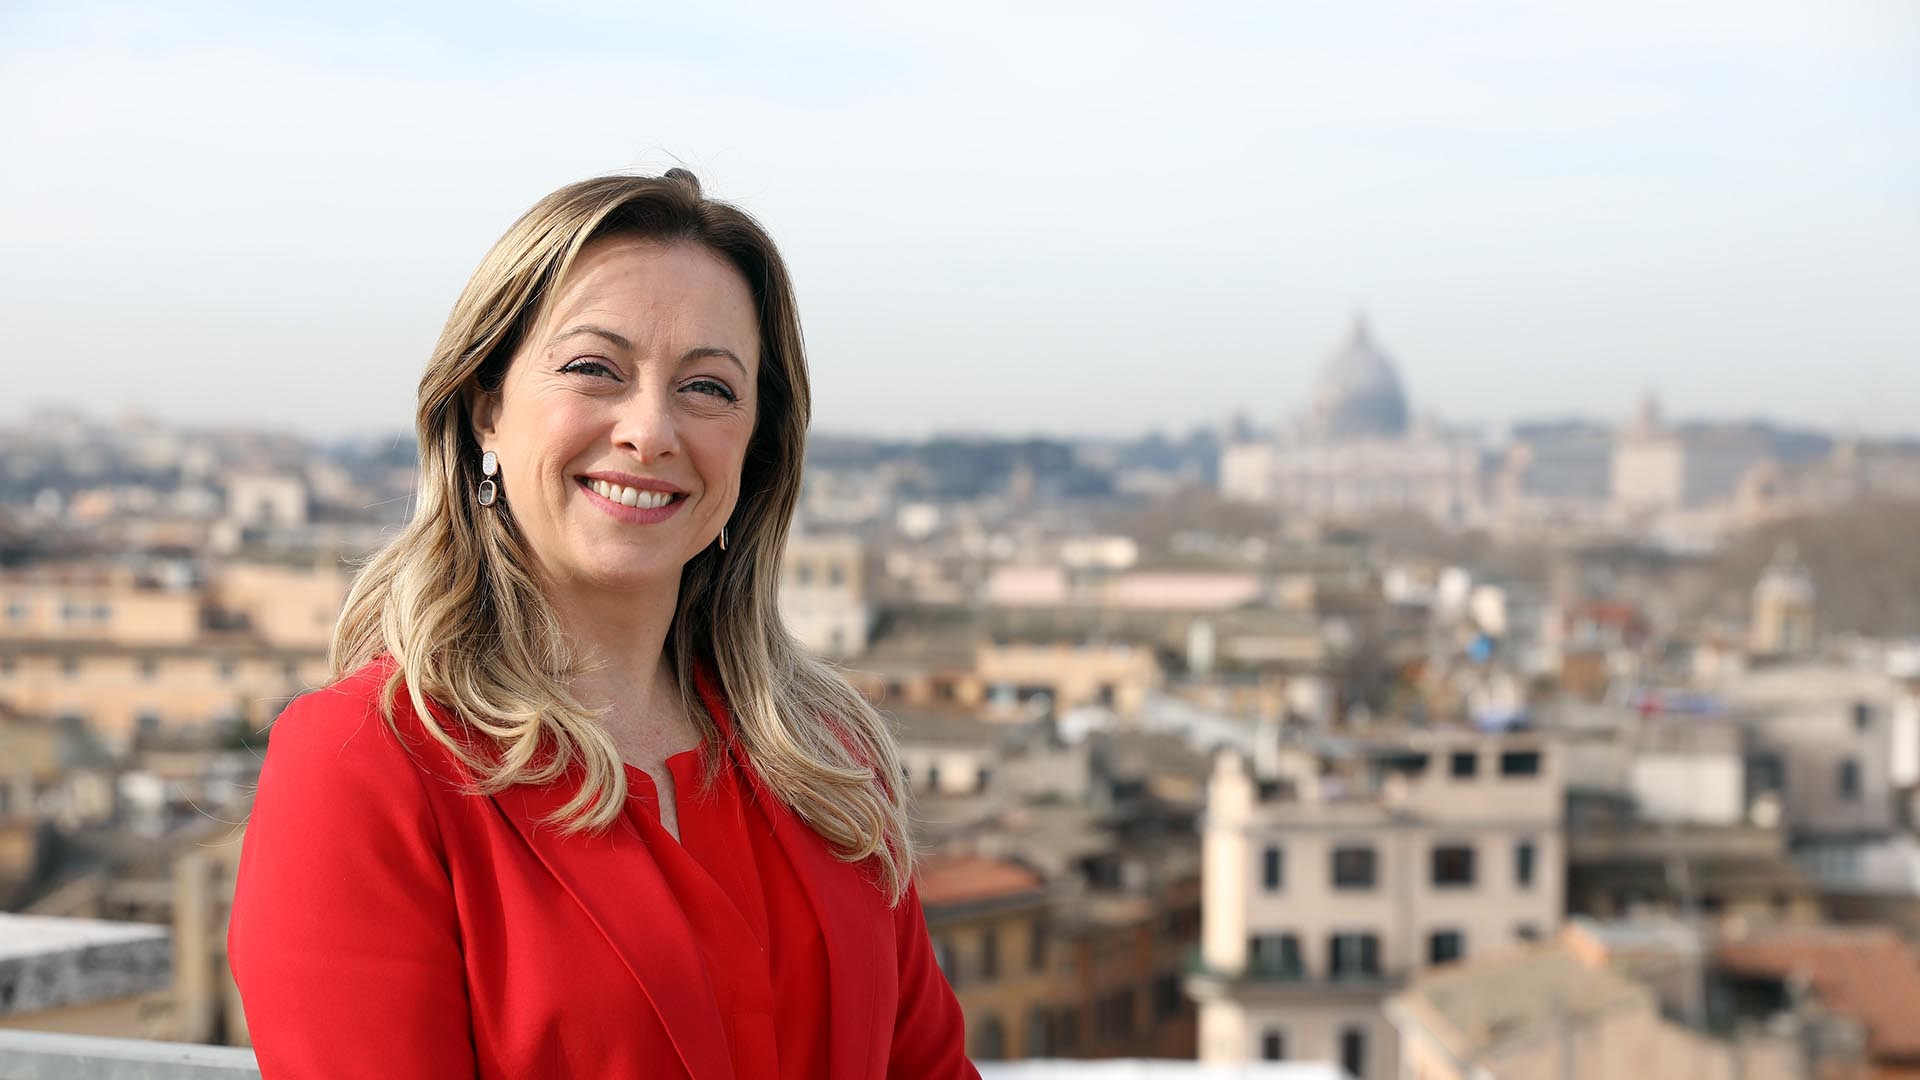 BAM! News - Le choc: Meloni élue première femme chef de gouvernement en Italie